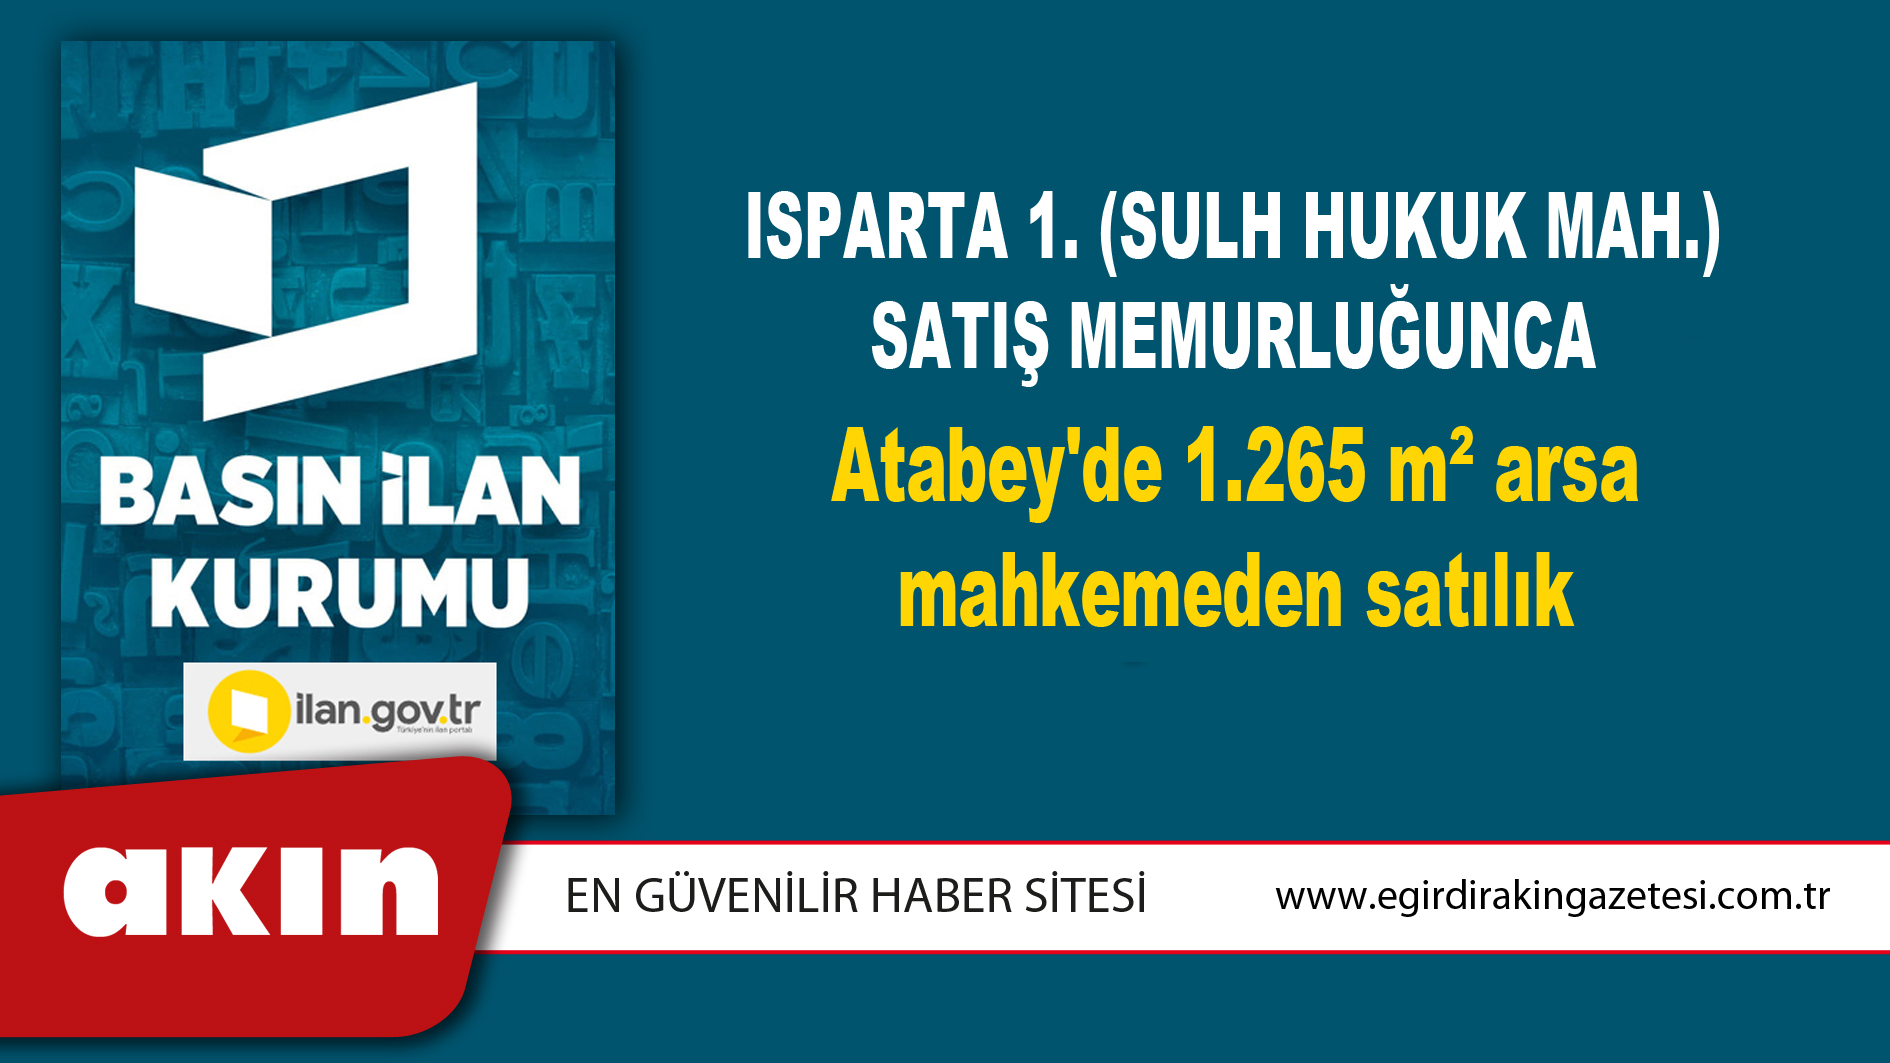 eğirdir haber,akın gazetesi,egirdir haberler,son dakika,Isparta 1. (Sulh Hukuk Mah.) Satış Memurluğunca Atabey'de 1.265 m² arsa mahkemeden satılık